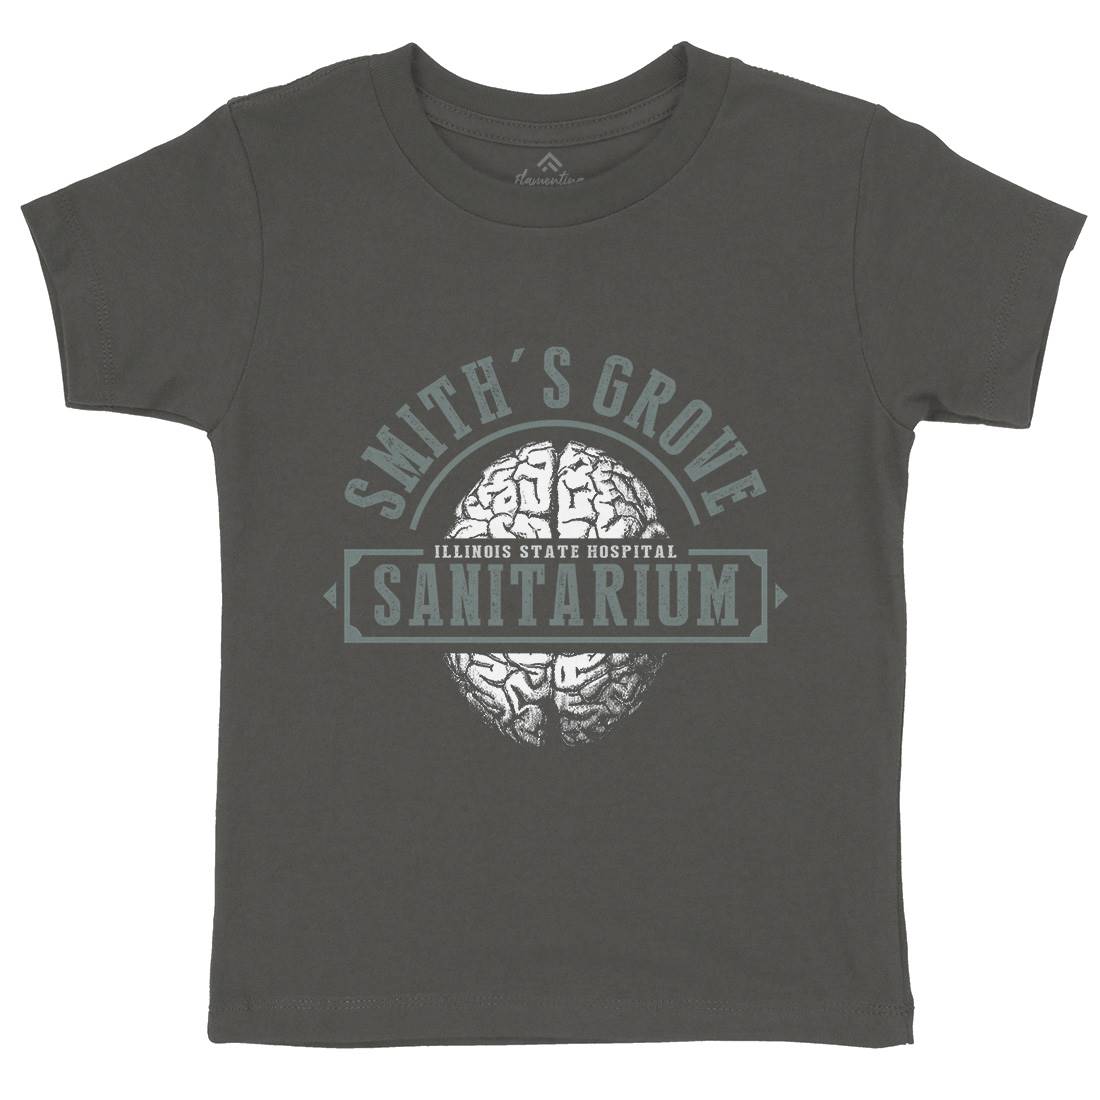 Smiths Grove Kids Crew Neck T-Shirt Horror D331